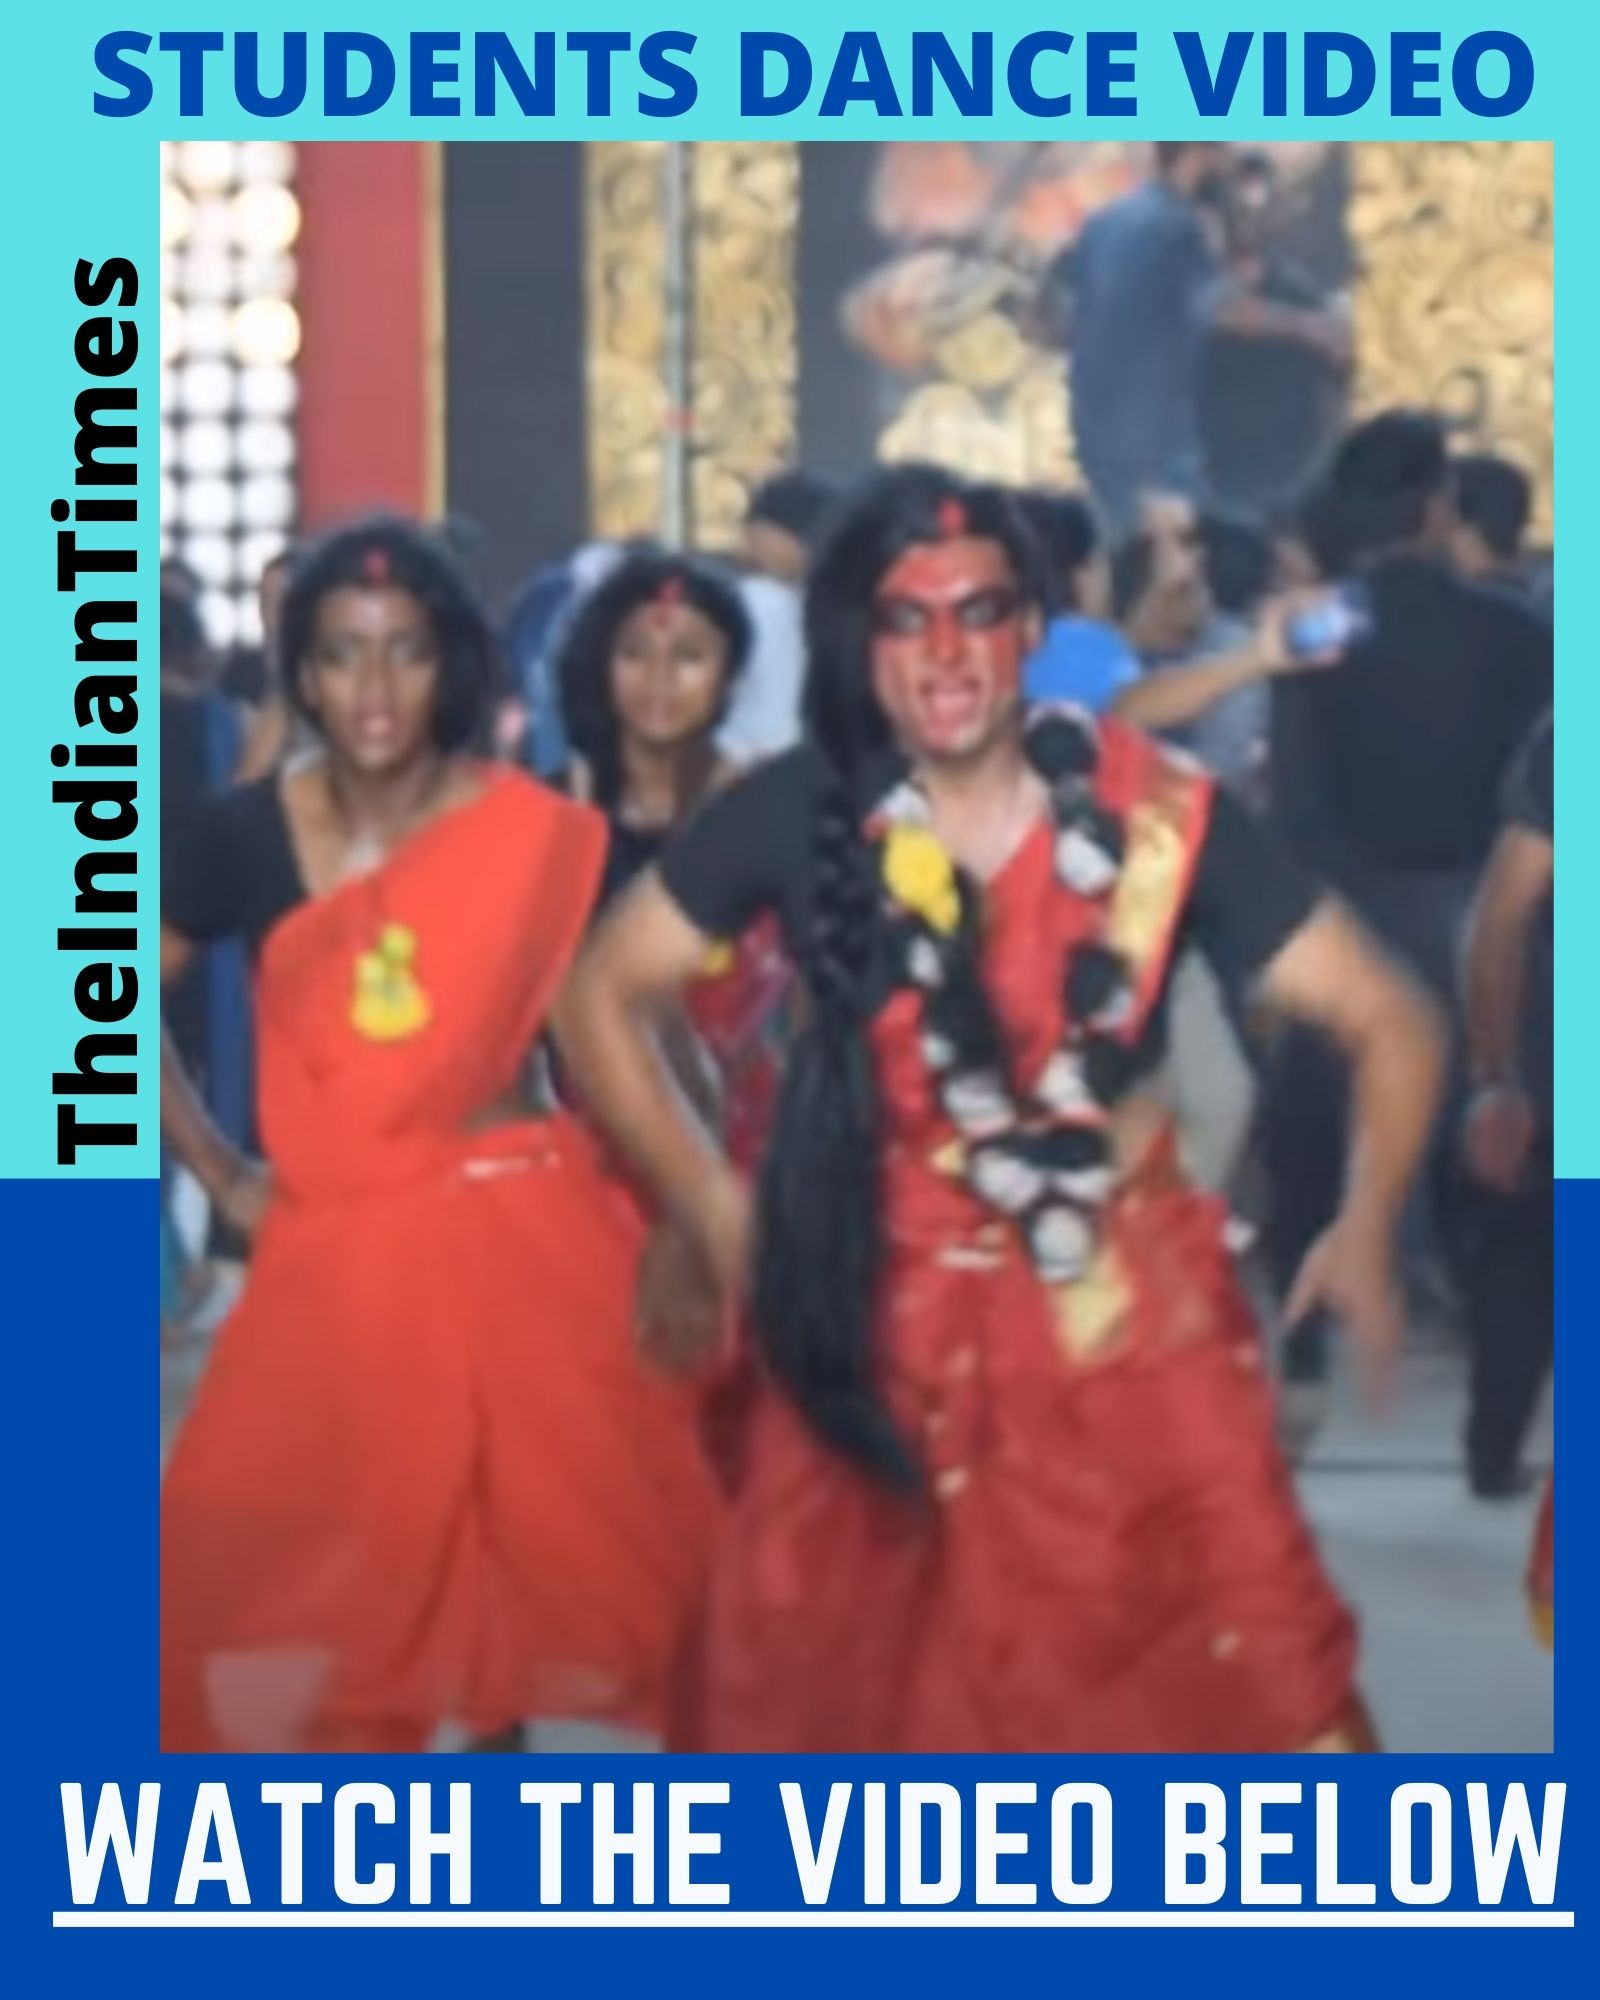 கல்லூரியில் காஞ்சனாவாக வந்து கலக்கல் Dance போட்ட மாணவர்கள்! viral video 1